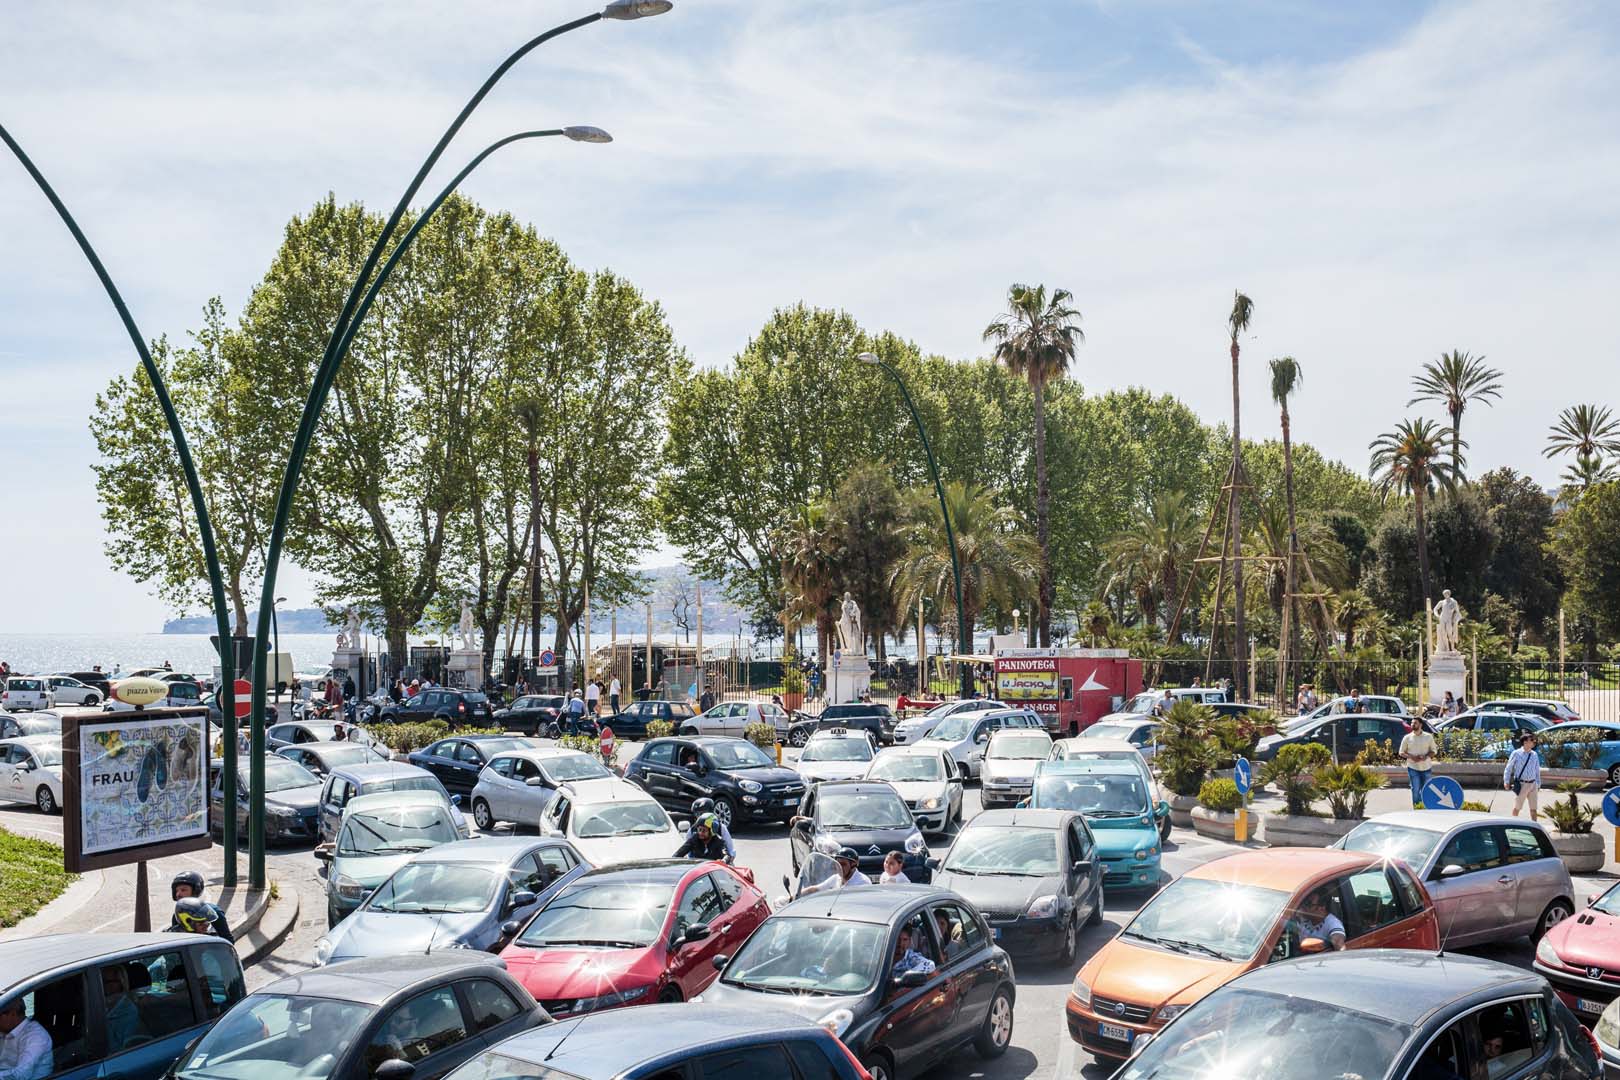 Industria autoveicolistica italiana, Anfia: cala del 9,6% la produzione nel 2019